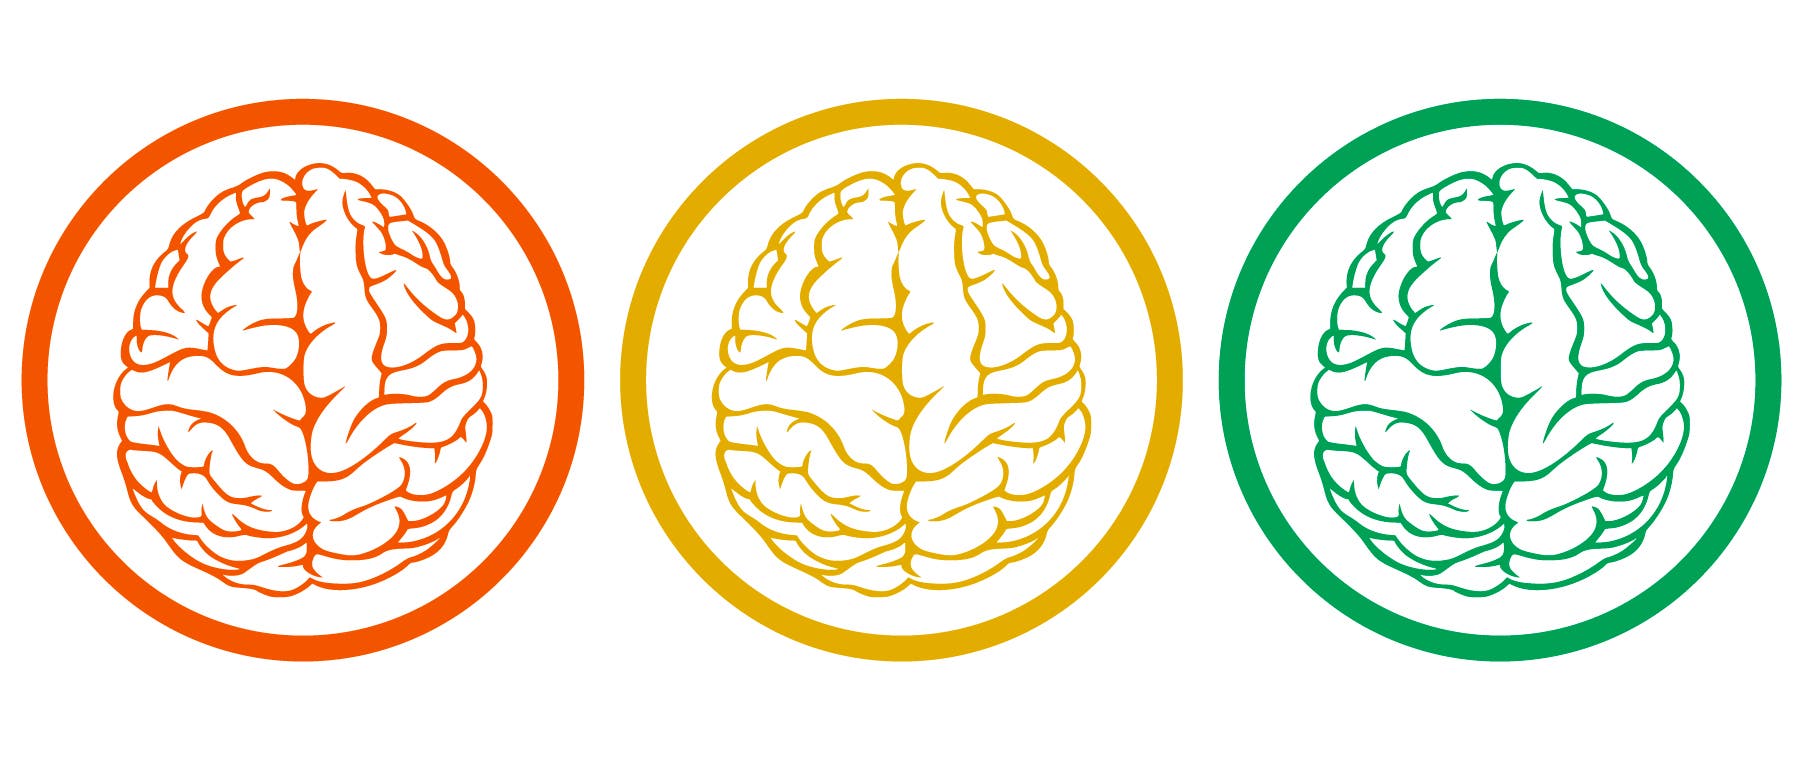 Drei Gehirne, in den Farben rot, gelb und grün, sind jeweils von einem Kreis umschlossen.